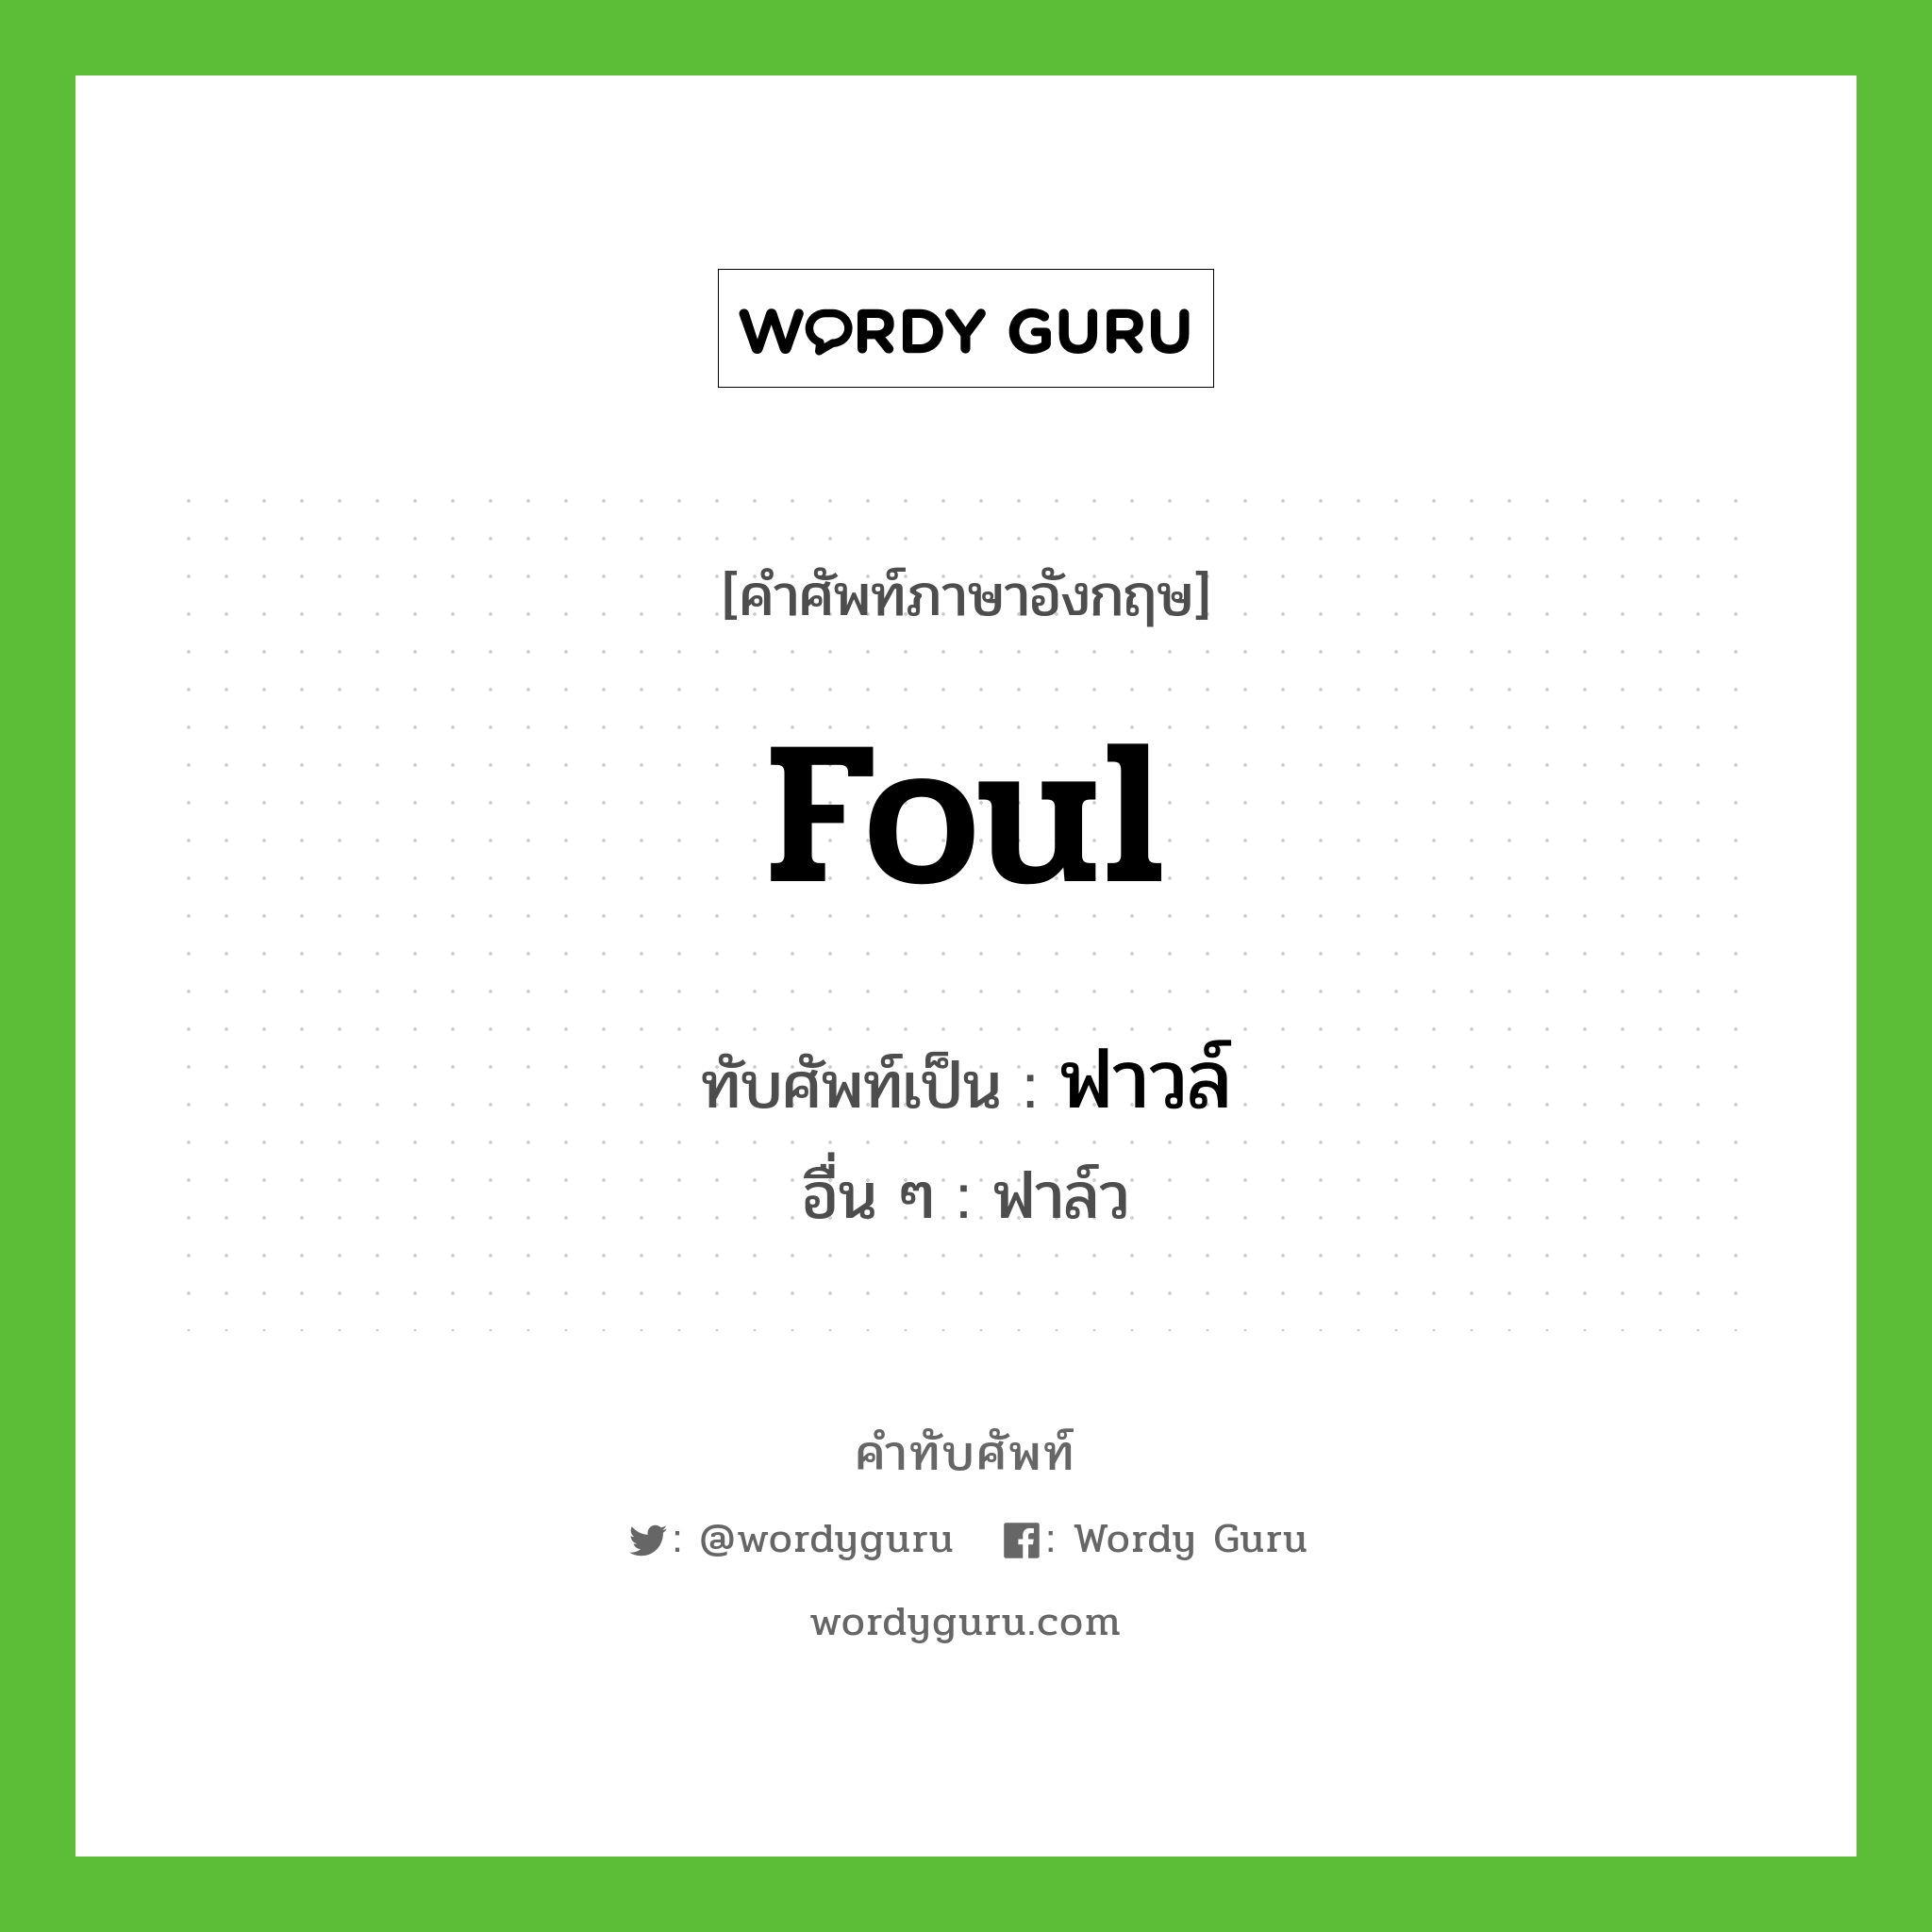 foul เขียนเป็นคำไทยว่าอะไร?, คำศัพท์ภาษาอังกฤษ foul ทับศัพท์เป็น ฟาวล์ อื่น ๆ ฟาล์ว